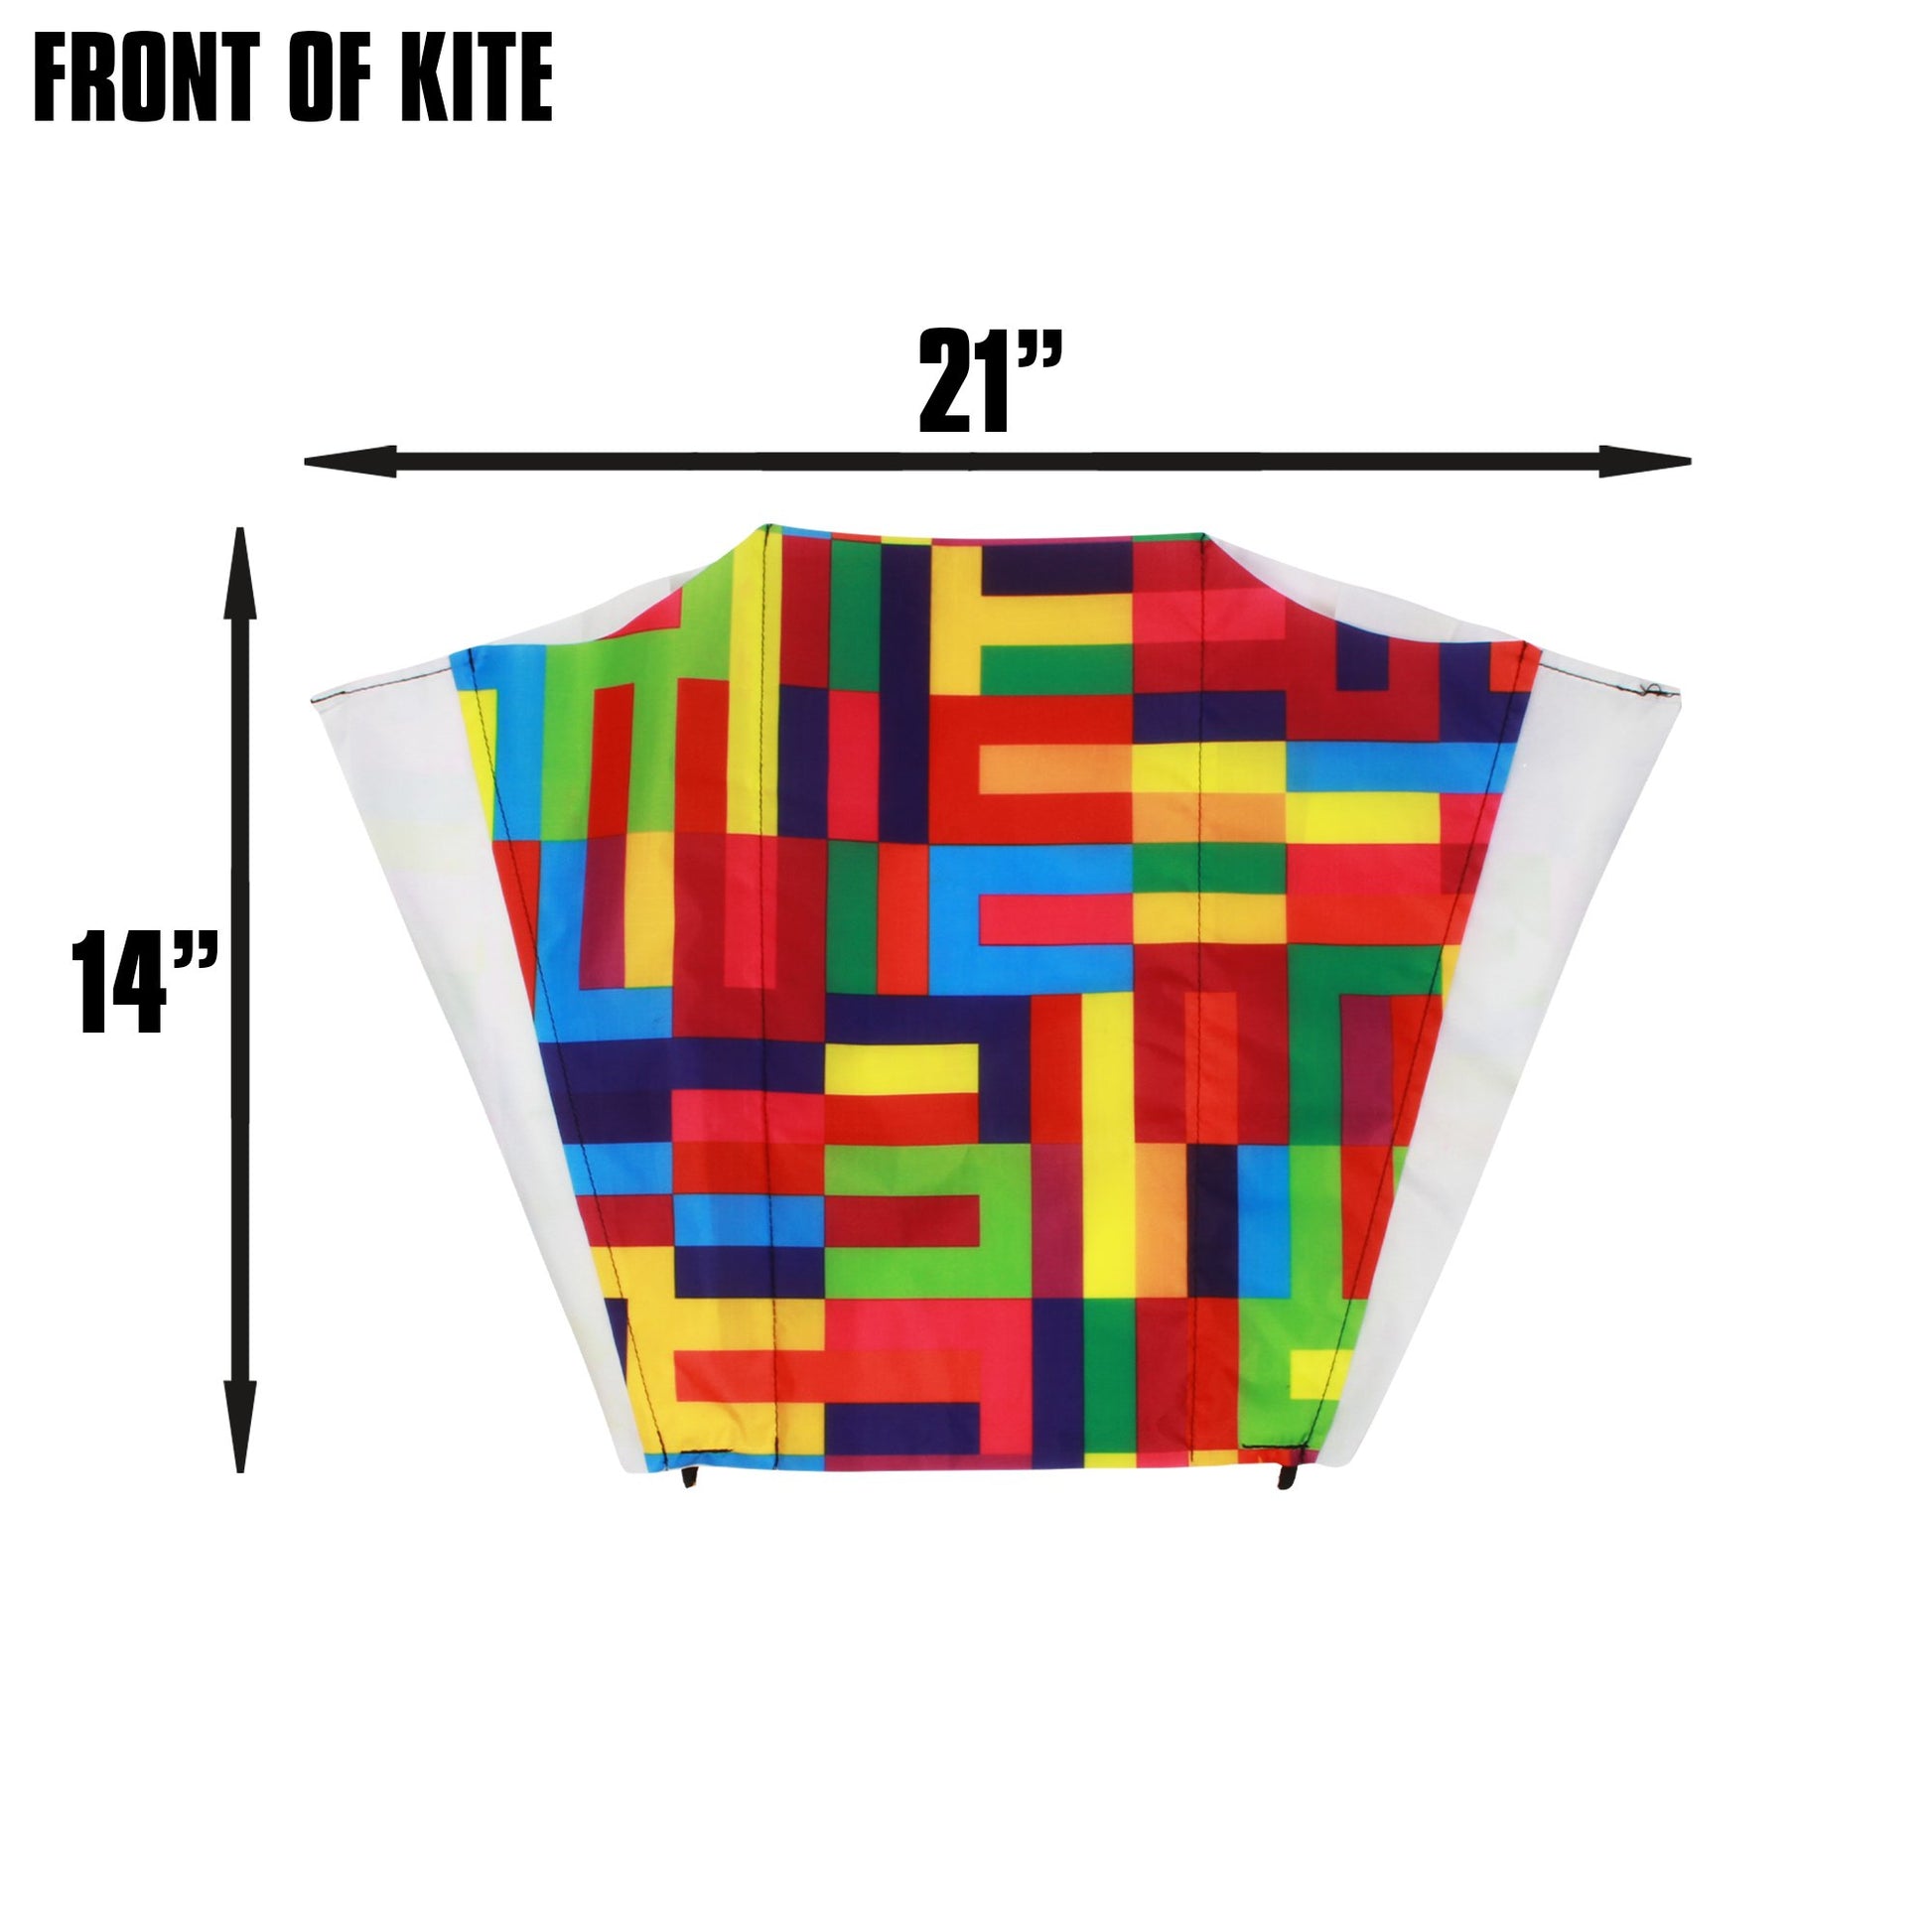 X Kites Pocket Kite Abstract Nylon Kite dimensions